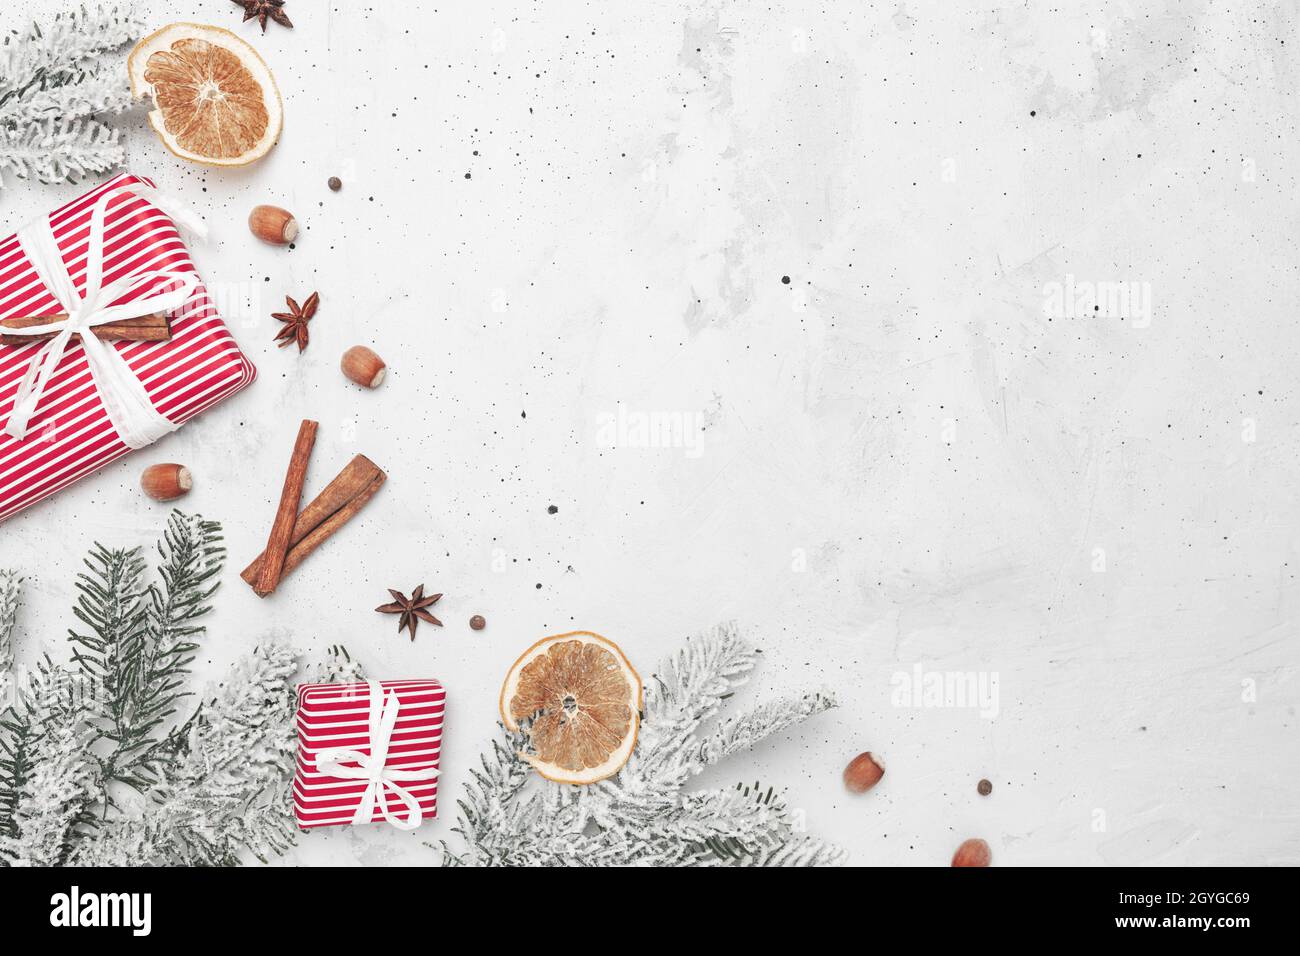 Weihnachten flach Lay Draufsicht auf weiß grauen Beton Hintergrund Tisch mit Geschenk roten Geschenkboxen, Dekorationen, Zimt-Sticks, Haselnuss, getrocknete Orange Stockfoto